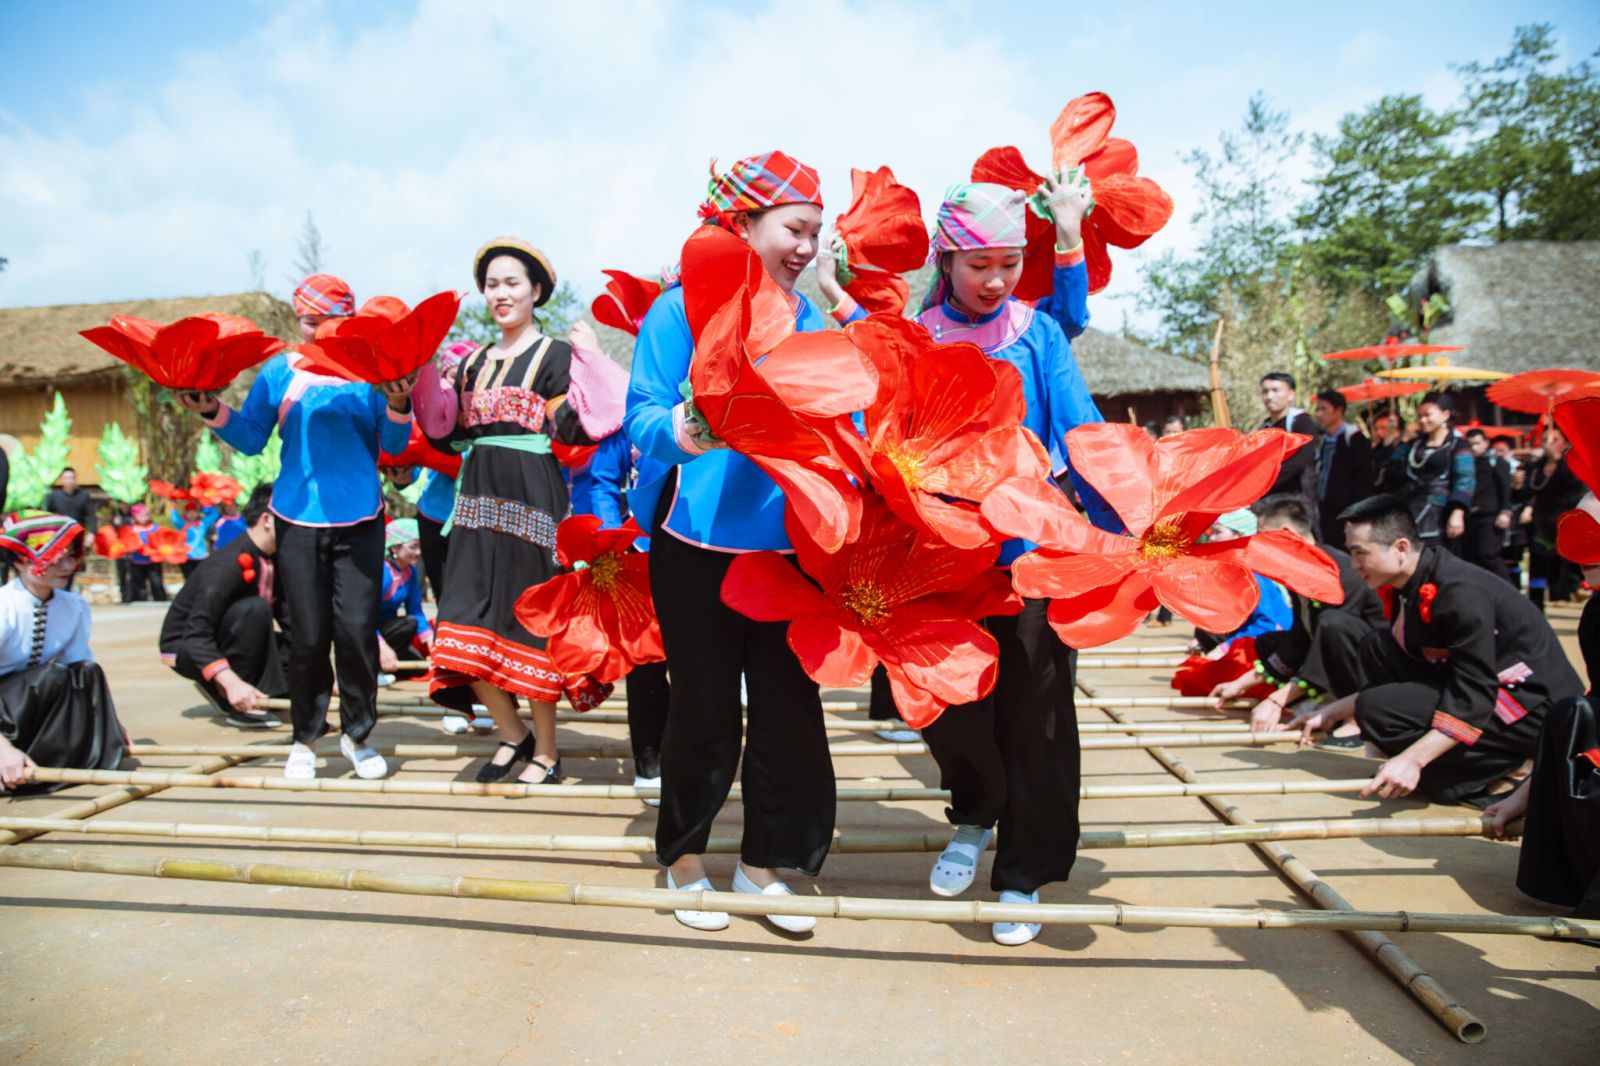  Trình diễn nghệ thuật đậm đà bản sắc văn hóa Tây Bắc tại Lễ hội hoa hồng Sa Pa, Lào Cai